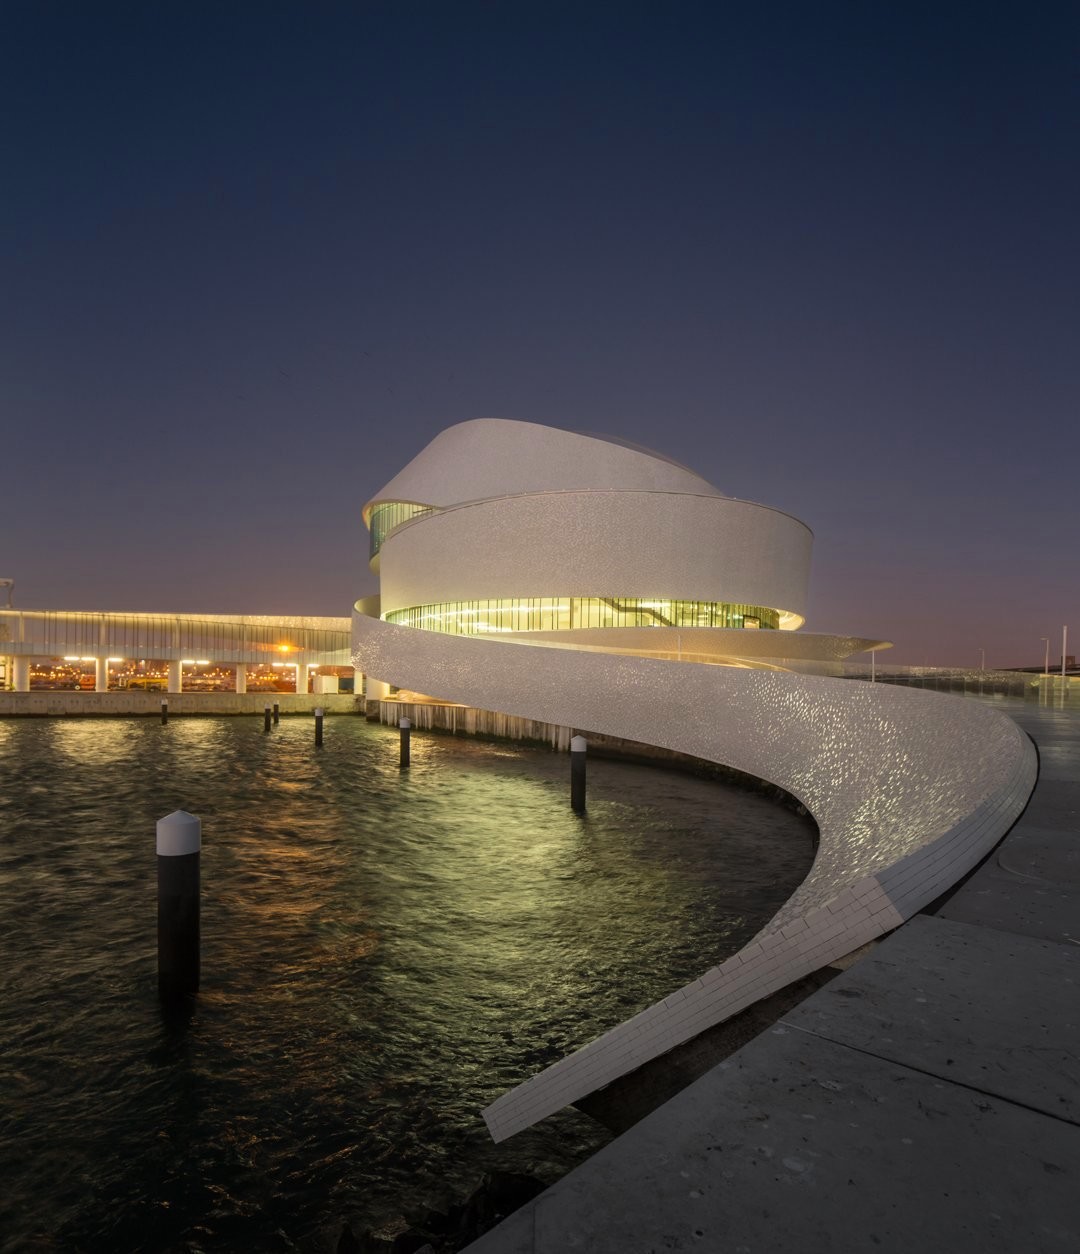 Необычная архитектура круизного терминала порта в Португалии